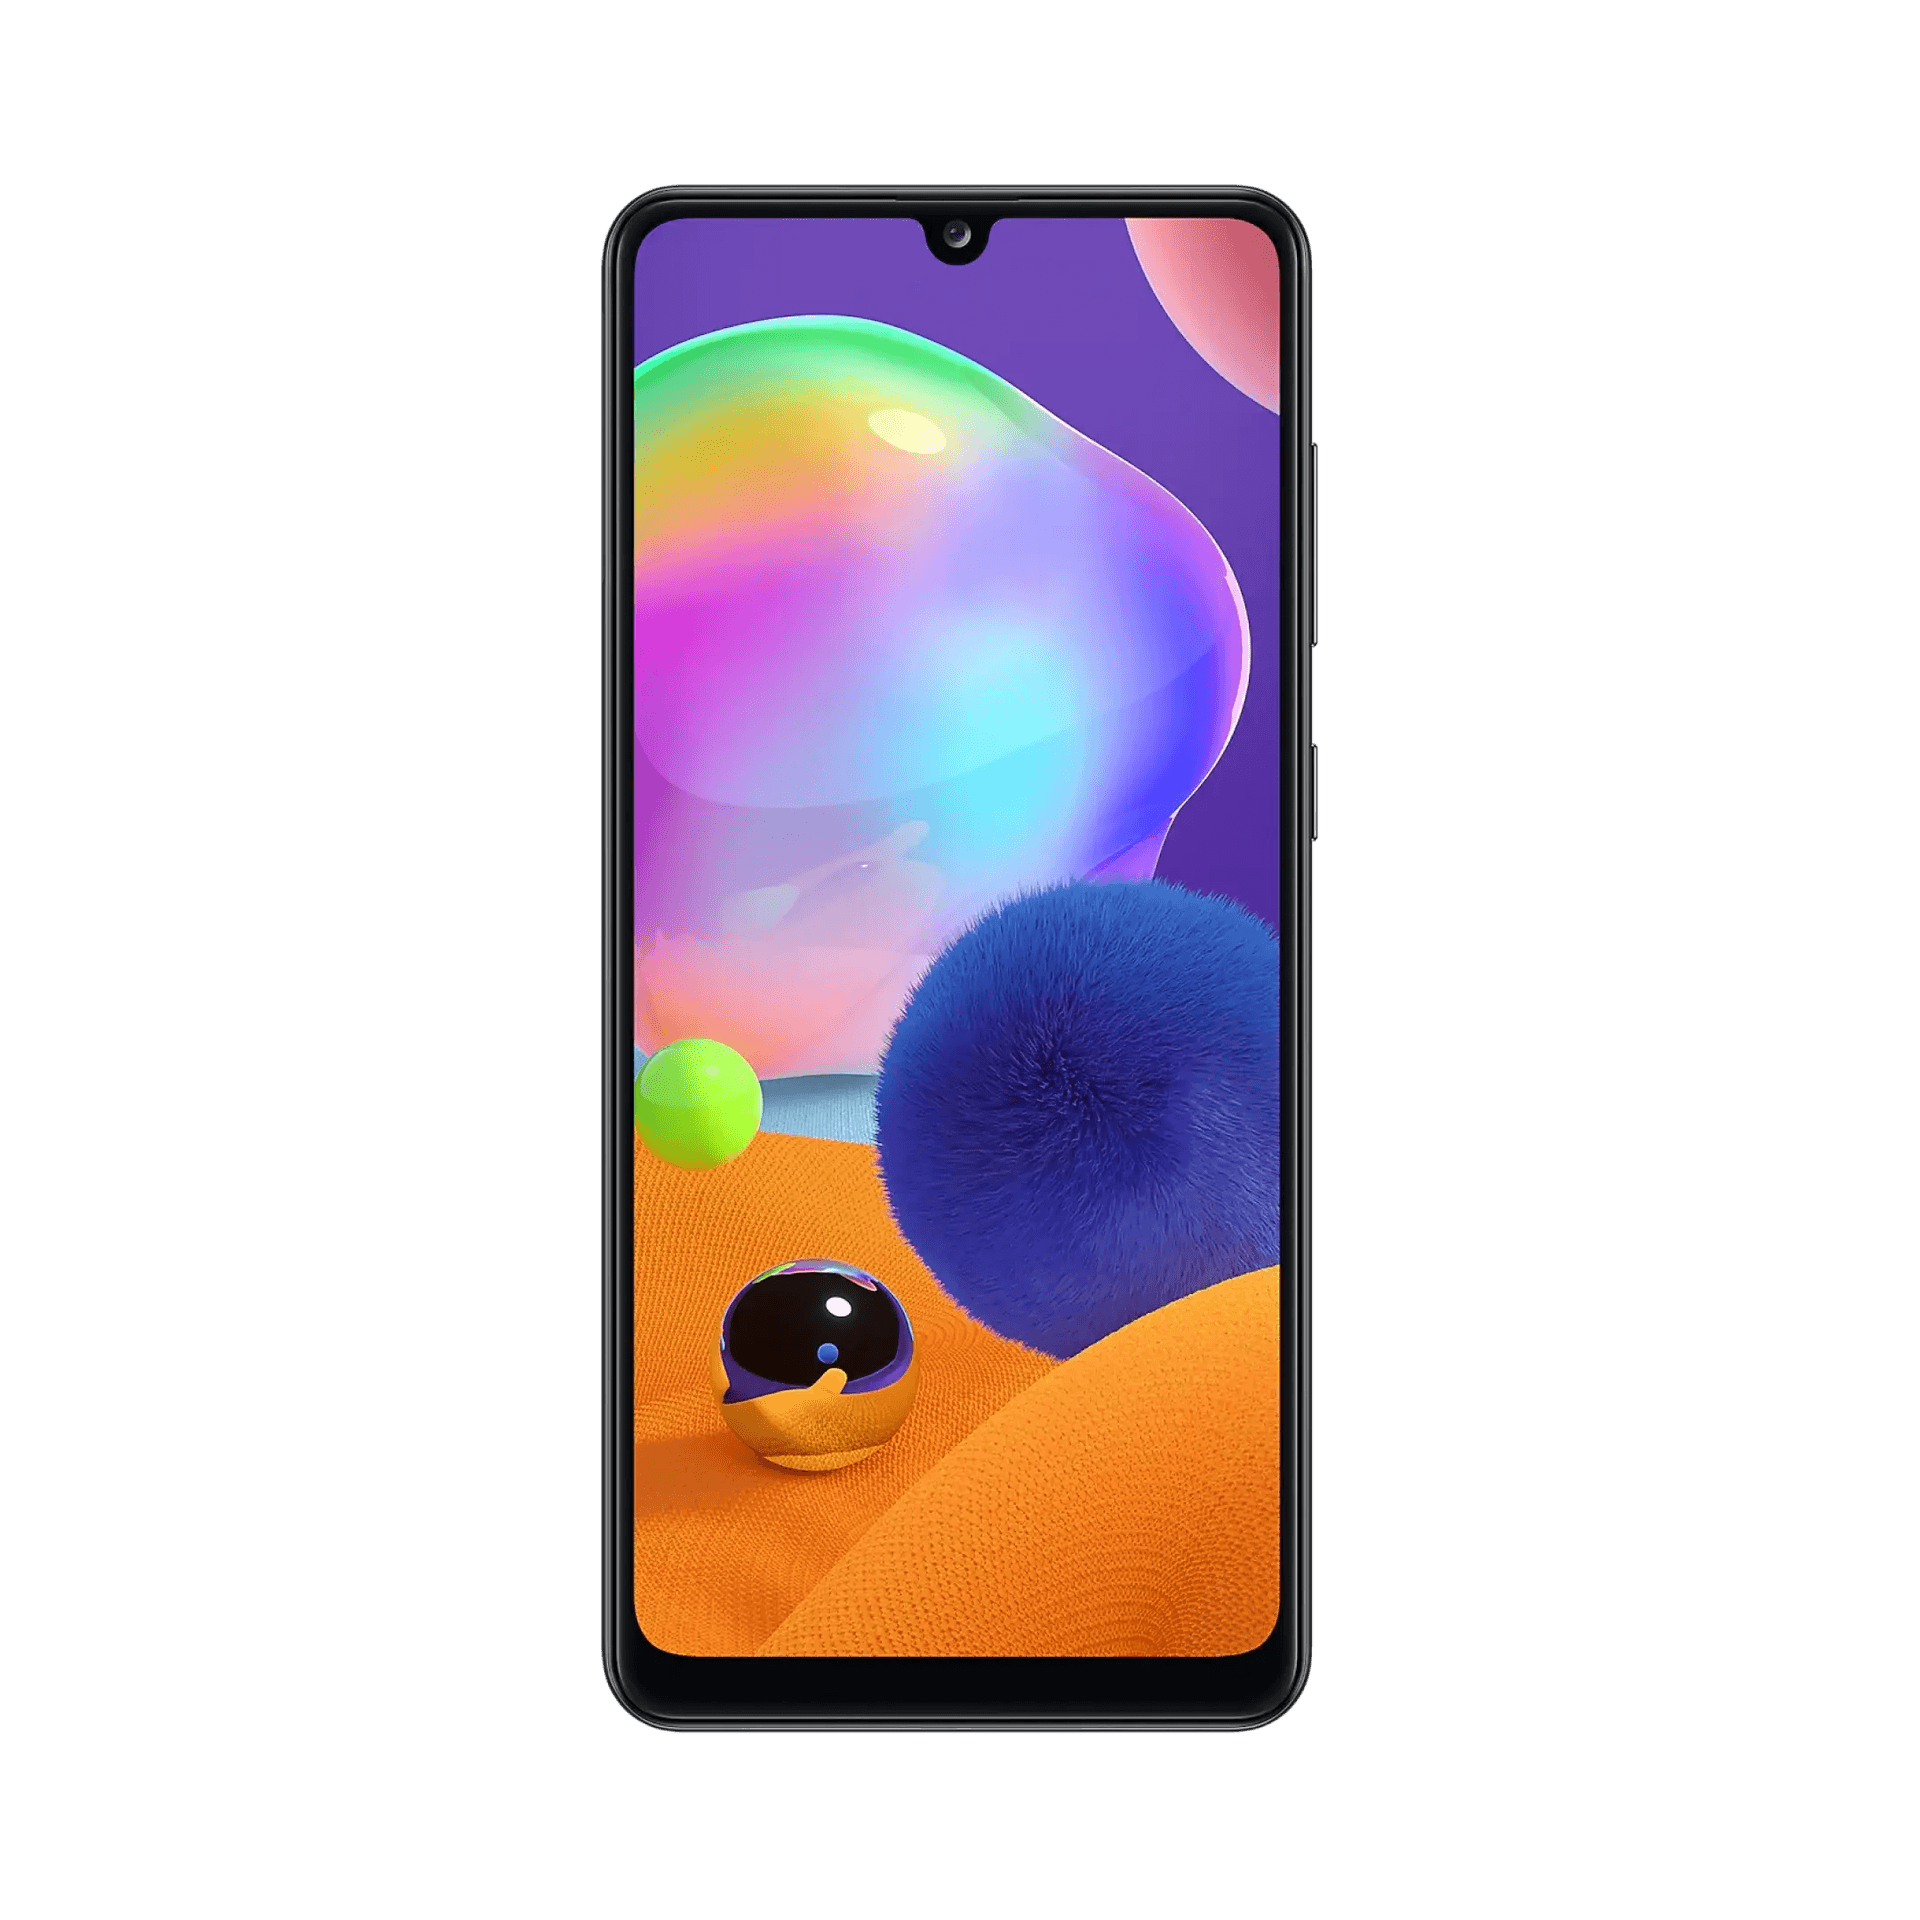 Samsung Galaxy A31 - 128 GB - Prism Crush Black